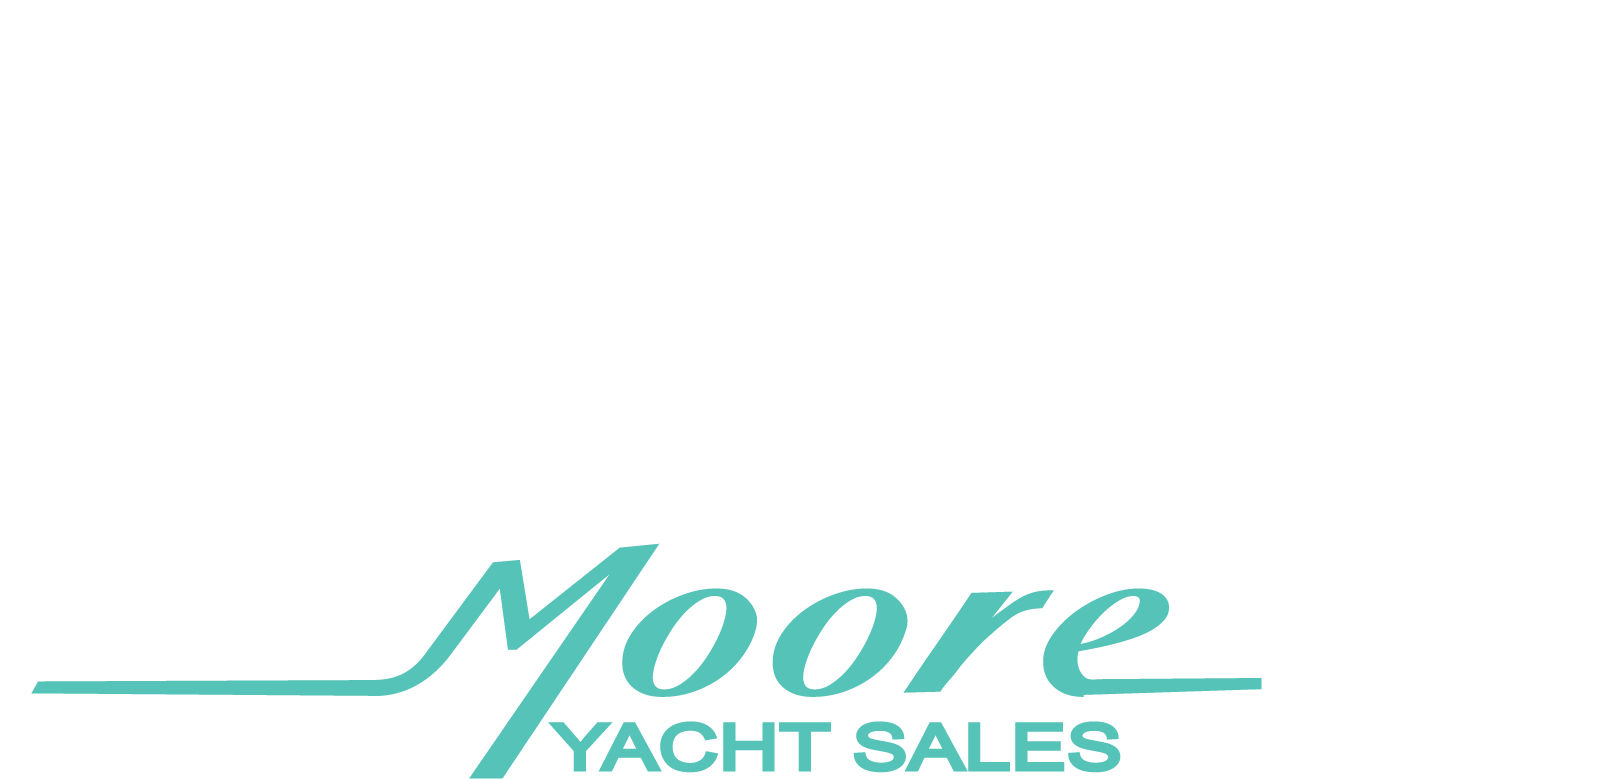 yacht brokers massachusetts